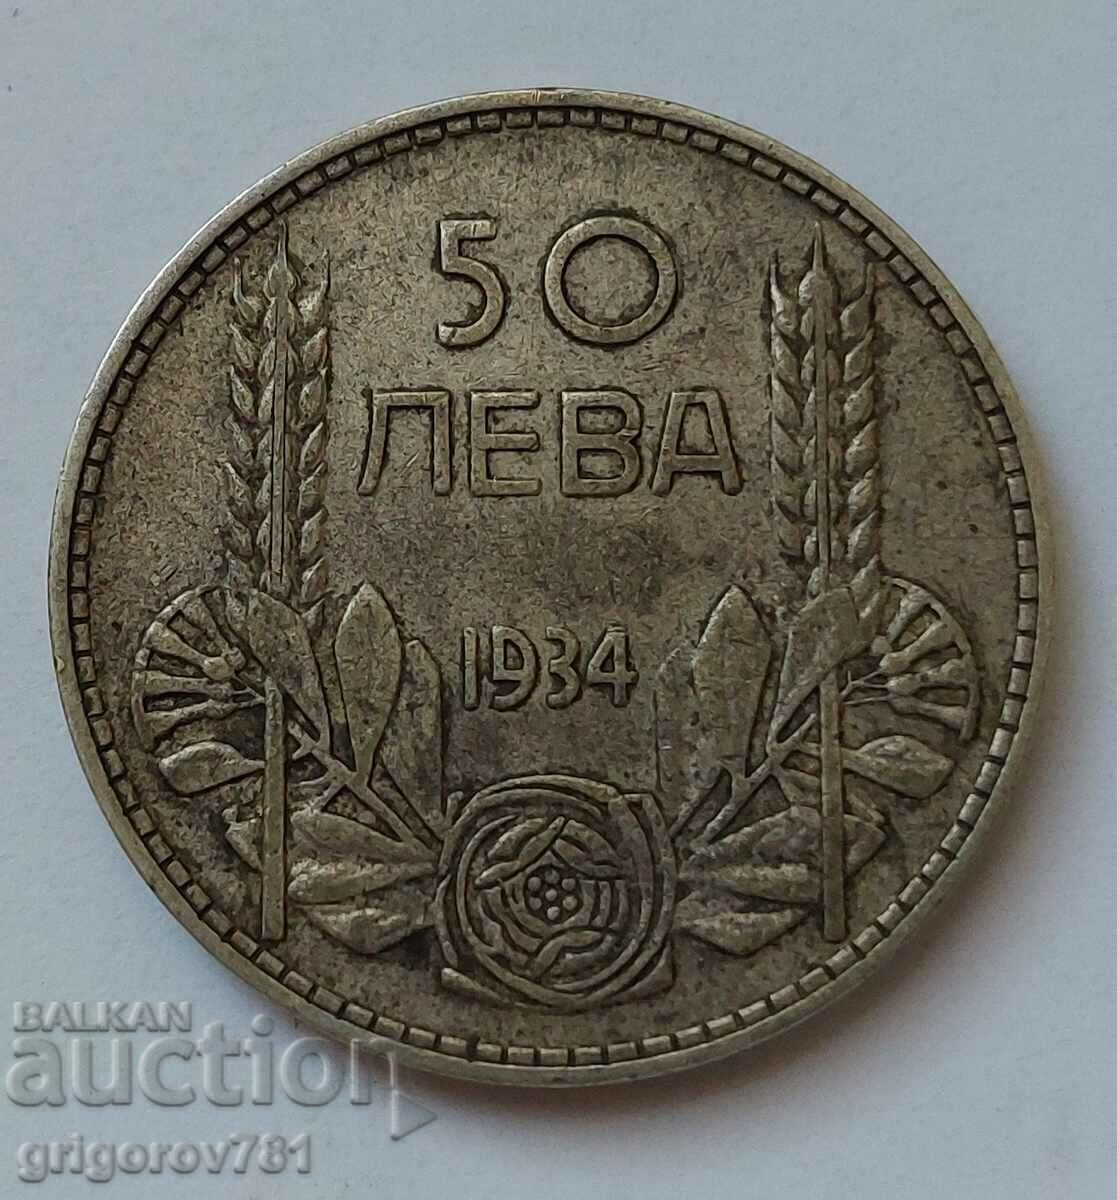 50 leva silver Bulgaria 1934 - silver coin #10